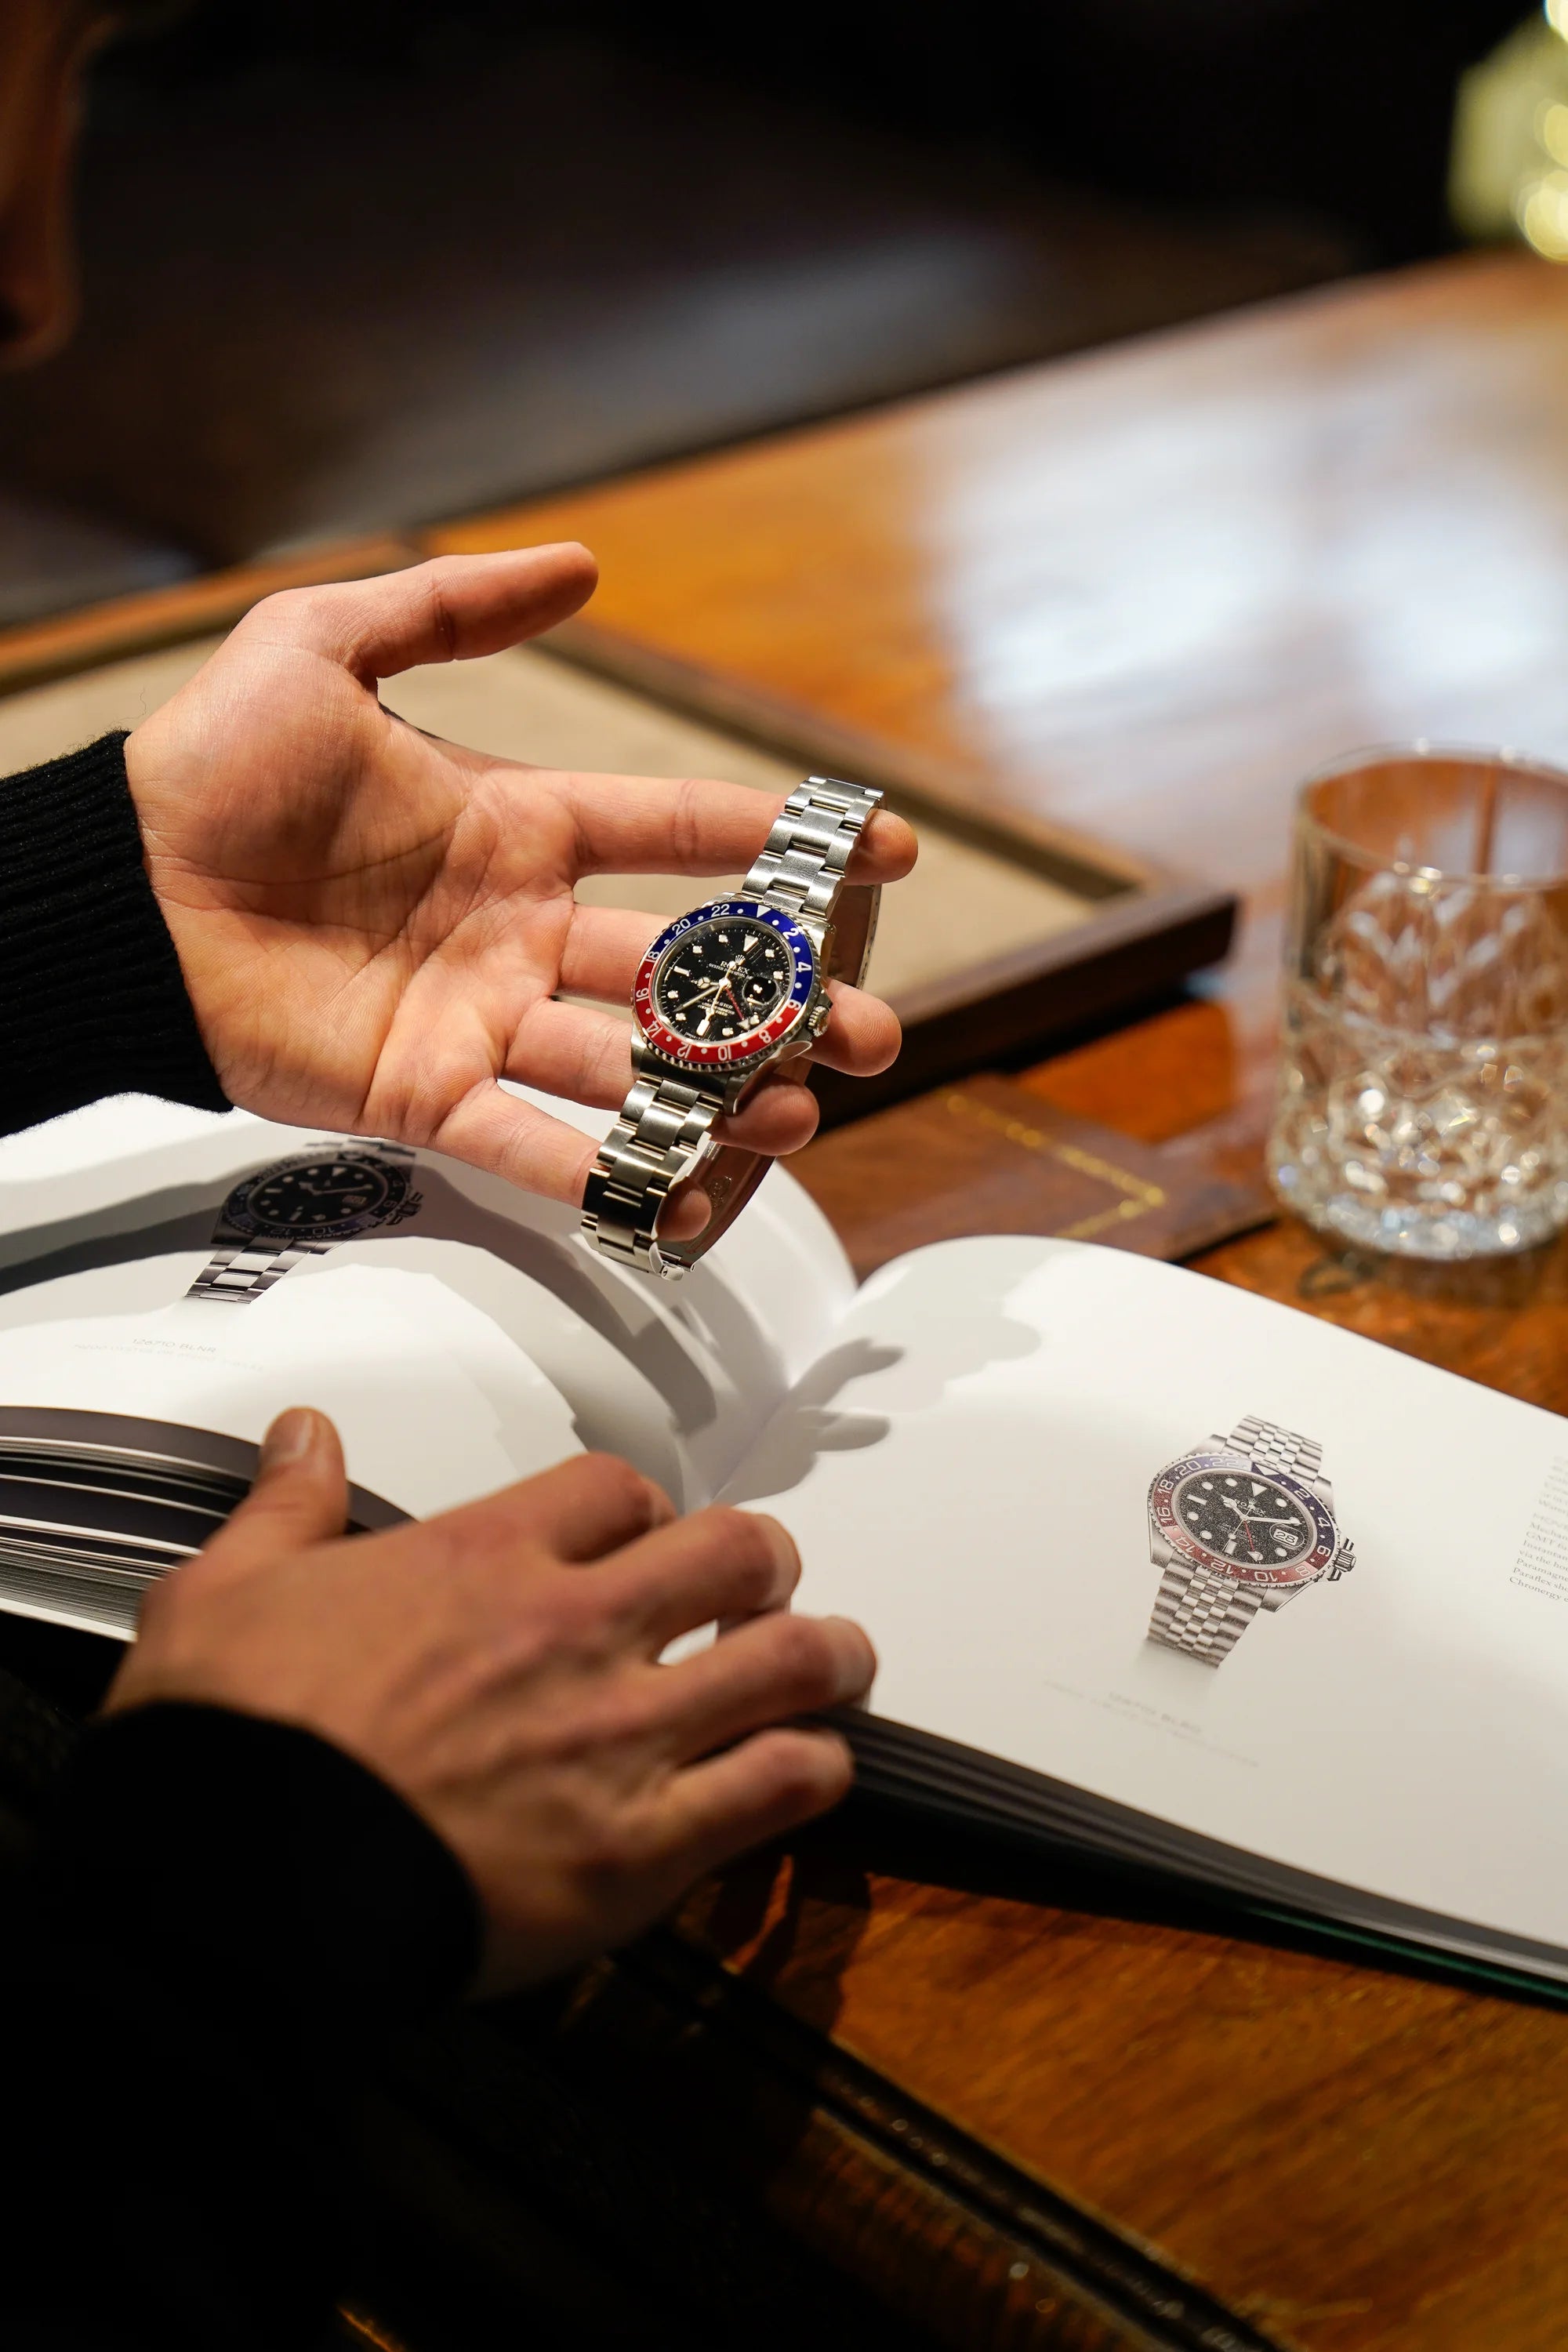 Kunde vergleicht seine Rolex GMT Master Pepsi mit der Referenz 16700 mit der aktuellen Variante dieser Uhr im Rolex Katalog